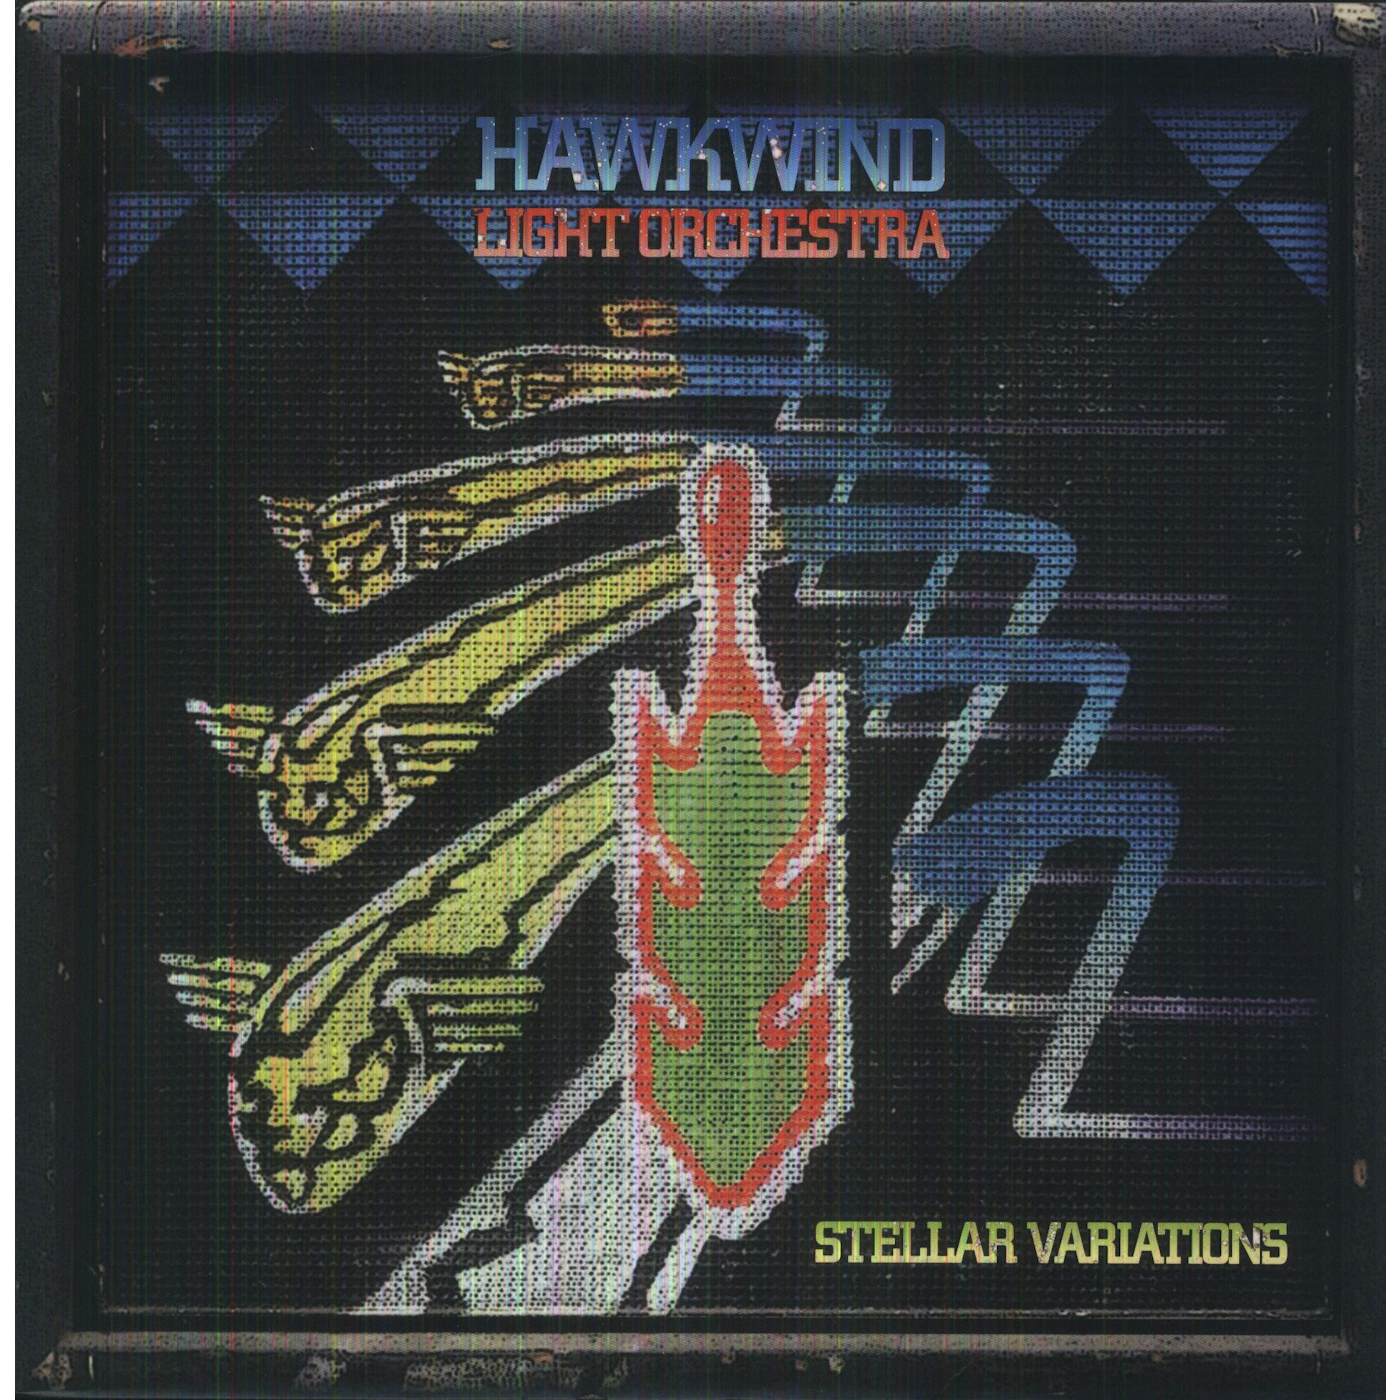 Hawkwind Light Orchestra Stellar Variations Vinyl Record